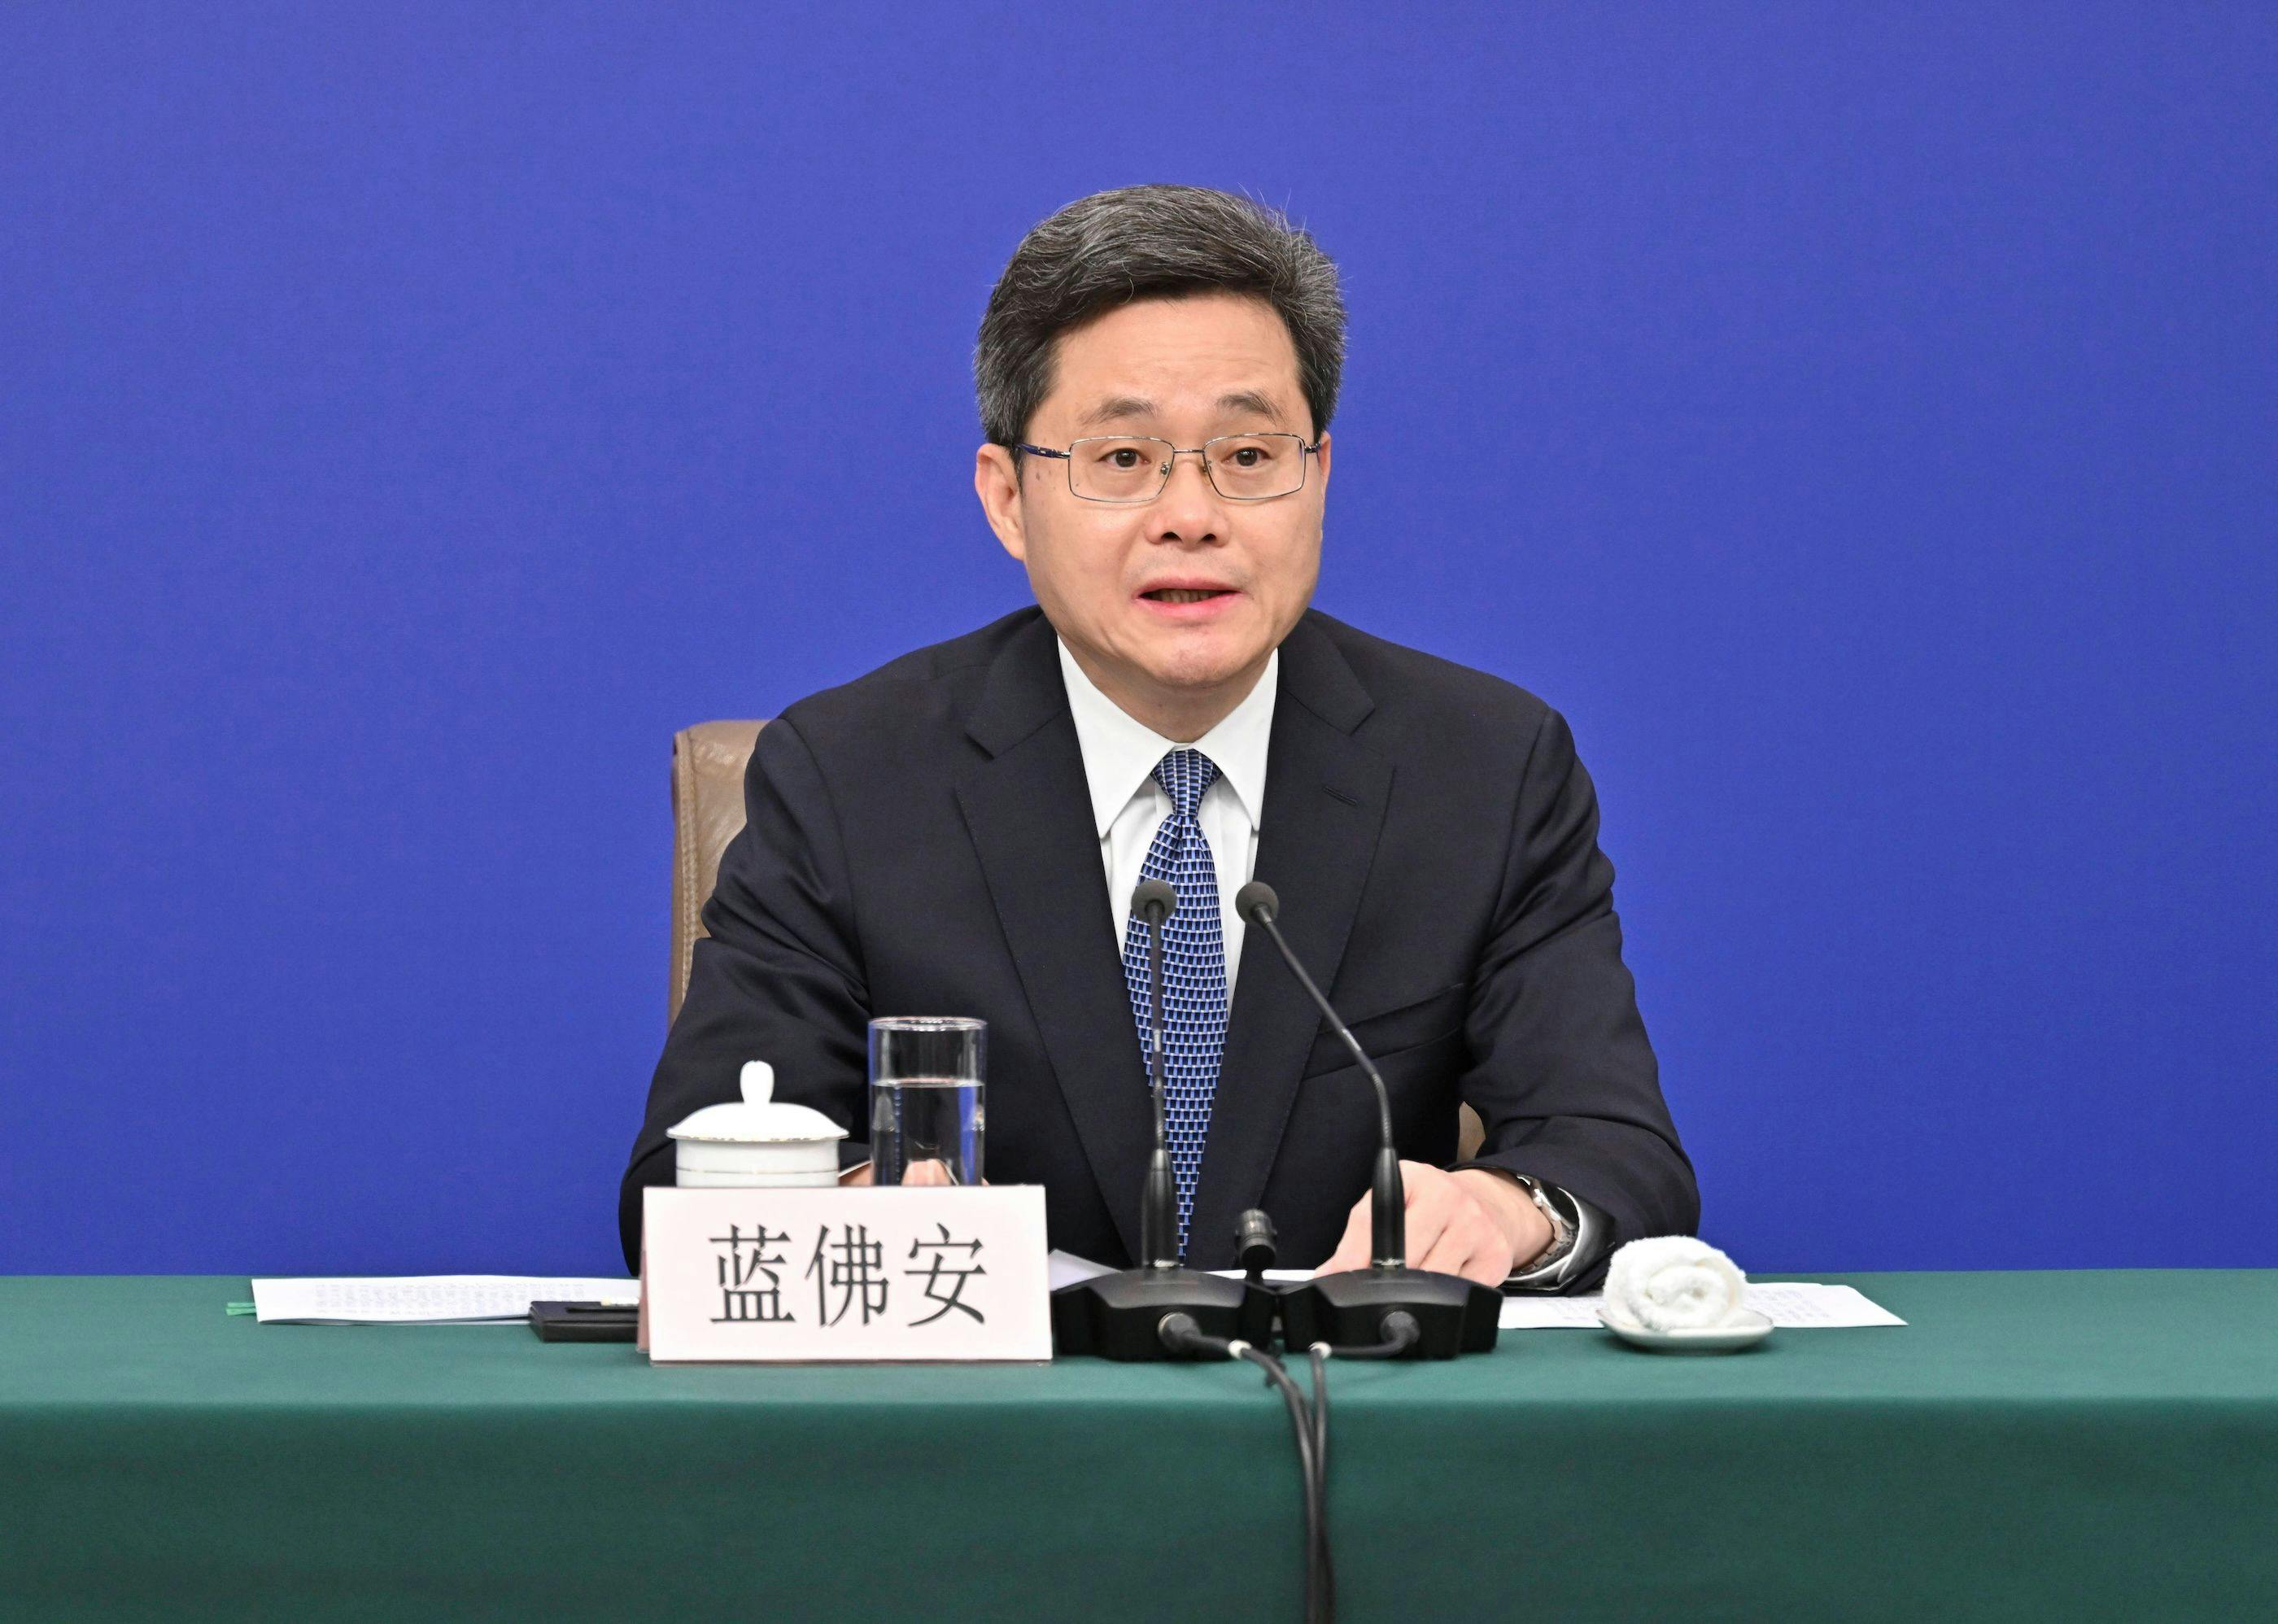 China Finanzen, Finance, Politik:  Finanzminister Lan Fo an spricht auf einer Pressekonferenz zum Thema Wirtschaft auf der zweiten Tagung des 14. Nationalen Volkskongresses (NVK) in Peking